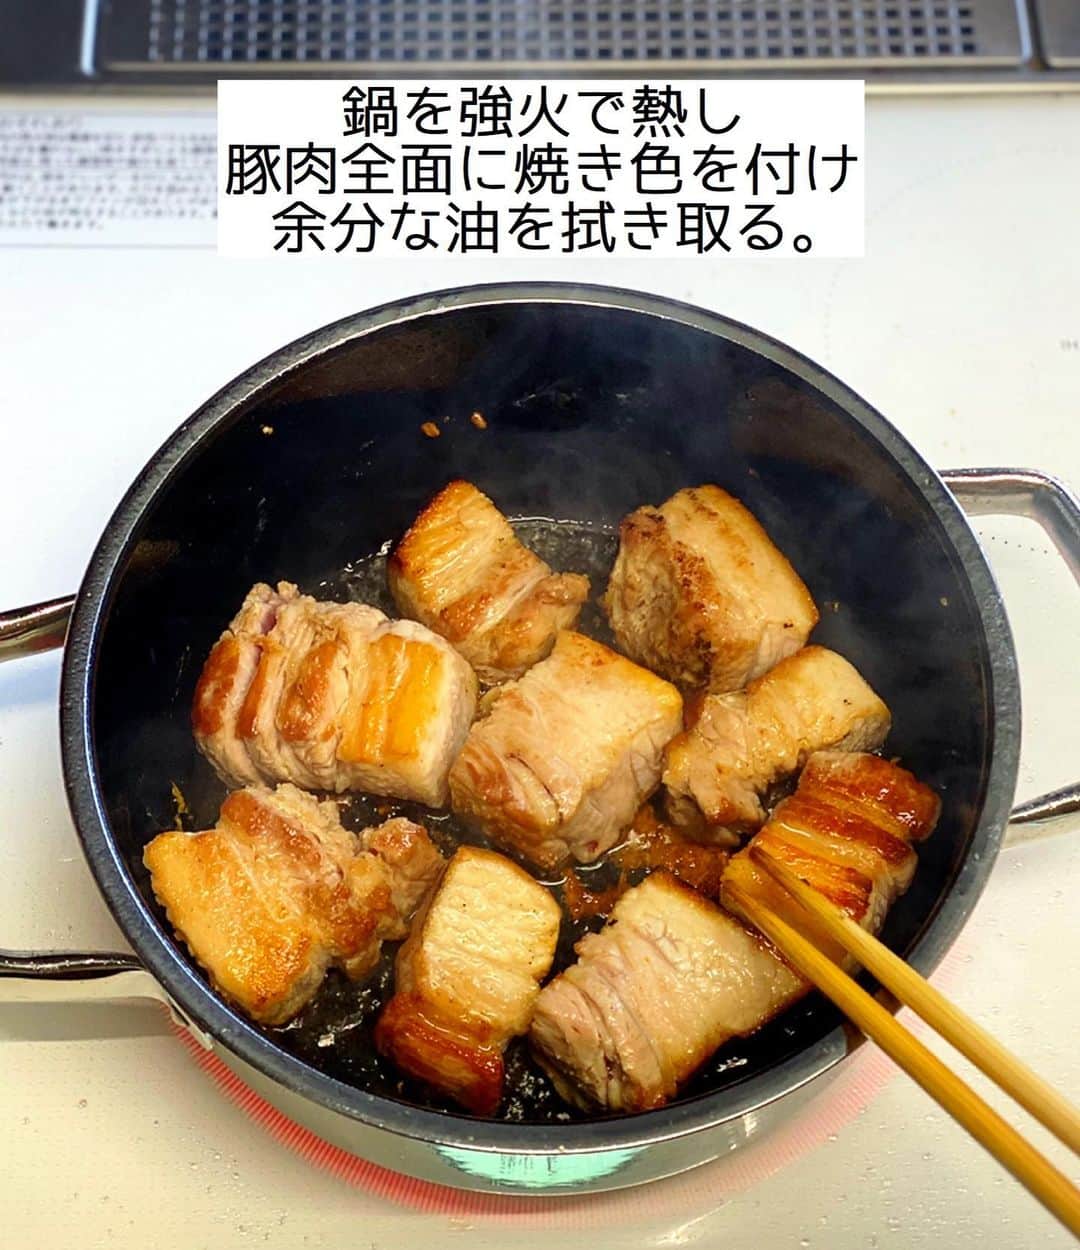 Mizuki【料理ブロガー・簡単レシピ】さんのインスタグラム写真 - (Mizuki【料理ブロガー・簡単レシピ】Instagram)「・﻿ 【#レシピ 】ーーーーー﻿ ♡超簡単！豚の角煮♡﻿ ーーーーーーーーーーー﻿ ﻿ ﻿ ﻿ おはようございます(*^^*)﻿ ﻿ 今日ご紹介させていただくのは﻿ \\ 豚の角煮 //﻿ ﻿ 一見ハードルが高そうな角煮も﻿ おうちで簡単に作ることができますよ♩﻿ はじめに焼き色をつけたら﻿ 後はコトコト煮込むだけ(*´艸`)﻿ このレシピは煮込み時間も短く﻿ 工程も単純で失敗がありません♡﻿ ﻿ 今回ゆで卵は最後に加えて﻿ 半熟状態をキープしました♩﻿ ﻿ ﻿ ﻿ ＿＿＿＿＿＿＿＿＿＿＿＿＿＿＿＿＿＿＿＿﻿ 【作りやすい量】﻿ 豚バラかたまり肉...500g﻿ 生姜...1/2かけ﻿ (あれば)長ねぎの青い部分...1本分﻿ ゆで卵...4個﻿ ●水...300ml﻿ ●酒・醤油...各70ml﻿ ●砂糖・はちみつ・酢...各大2﻿ (好みで)ほうれん草...1/2束﻿ ﻿ 1.豚肉は4cm大に切る。生姜は薄切りにする。﻿ 2.鍋を強火で熱し、豚肉の表面全体にしっかり焼き色を付け、余分な脂を拭き取る。﻿ 3.●、生姜、長ねぎの青い部分を加えて落とし蓋をのせ、弱火で50分煮る。火を止め、ゆで卵を加えて10分以上おく。﻿ 4. 3を器に盛り、さっと塩茹でして食べやすく切ったほうれん草を添える。﻿ ￣￣￣￣￣￣￣￣￣￣￣￣￣￣￣￣￣￣￣￣﻿ ﻿ ﻿ ﻿ 《ポイント》﻿ ♦︎私は20cmの鍋を使用しています♩﻿ ♦︎一度冷ますとより味が染みます♩(冷めた時表面に白く固まった脂を取り除けばすっきりした味わいに♩)﻿ ♦︎はちみつが入っているので1歳未満のお子さんには食べさせないで下さい☆ ♦︎ゆで卵(8分ゆで)は最後に加えて半熟に仕上げました♩好みで途中で加えて豚肉と一緒に煮てもOKです♩﻿ ﻿ ﻿ ﻿ ﻿ ﻿ ﻿ ﻿ ﻿ 📕新刊発売中📕﻿ 【ラクしておいしい！#1品晩ごはん 】﻿ ￣￣￣￣￣￣￣￣￣￣￣￣￣￣￣￣￣﻿ 私たちだってヘトヘトな日がある•••﻿ 毎日何品も作っていられない•••﻿ もうごはんに悩みたくない😢﻿ そんな時、1品ごはんはいかがでしょう？﻿ というご提案です✨﻿ ﻿ 【1品ごはん】は﻿ 副菜いらずで全てがシンプル！﻿ ￣￣￣￣￣￣￣￣￣￣￣￣￣￣￣￣￣￣﻿ 一品つくるだけでいいから﻿ 献立を考えなくてよし！﻿ ￣￣￣￣￣￣￣￣￣￣￣￣￣￣￣￣￣￣﻿ 悩まない、疲れない、﻿ 気力や時間がなくてもなんとかなる！﻿ ￣￣￣￣￣￣￣￣￣￣￣￣￣￣￣￣￣￣﻿ そんな頼りになる﻿ 便利なお助けごはんです☺️💕﻿ (ハイライトに🔗貼っています✨)﻿ ￣￣￣￣￣￣￣￣￣￣￣￣￣￣￣￣￣﻿ ﻿ ﻿ ﻿ ﻿ ﻿ ⭐️発売中⭐️﻿ ＿＿＿＿＿＿＿＿＿＿＿＿＿＿＿＿＿＿﻿ しんどくない献立、考えました♩﻿ \15分でいただきます/﻿ 📕#Mizukiの2品献立 📕﻿ ﻿ 和食をもっとカジュアルに♩﻿ \毎日のごはんがラクになる/﻿ 📘#Mizukiの今どき和食 📘﻿ ﻿ ホケミレシピの決定版♩﻿ \はじめてでも失敗しない/﻿ 📙ホットケーキミックスのお菓子 📙﻿ ﻿ NHKまる得マガジンテキスト☆﻿ ホットケーキミックスで﻿ 📗絶品おやつ&意外なランチ📗﻿ ￣￣￣￣￣￣￣￣￣￣￣￣￣￣￣￣￣￣﻿ ﻿ ﻿ ﻿ ＿＿＿＿＿＿＿＿＿＿＿＿＿＿＿＿＿＿﻿ レシピを作って下さった際や﻿ レシピ本についてのご投稿には﻿ タグ付け( @mizuki_31cafe )して﻿ お知らせいただけると嬉しいです😊💕﻿ ￣￣￣￣￣￣￣￣￣￣￣￣￣￣￣￣￣￣﻿ ﻿ ﻿ ﻿ ﻿ #角煮#豚の角煮#作り置き#お正月料理#おせち料理#Mizuki#簡単レシピ#時短レシピ#節約レシピ#料理#フーディーテーブル#マカロニメイト#おうちごはん#デリスタグラマー#料理好きな人と繋がりたい#食べ物#おうちごはんlover#写真好きな人と繋がりたい#foodpic#cooking#recipe#lin_stagrammer#foodporn#yummy#f52grams#角煮m」12月27日 8時10分 - mizuki_31cafe